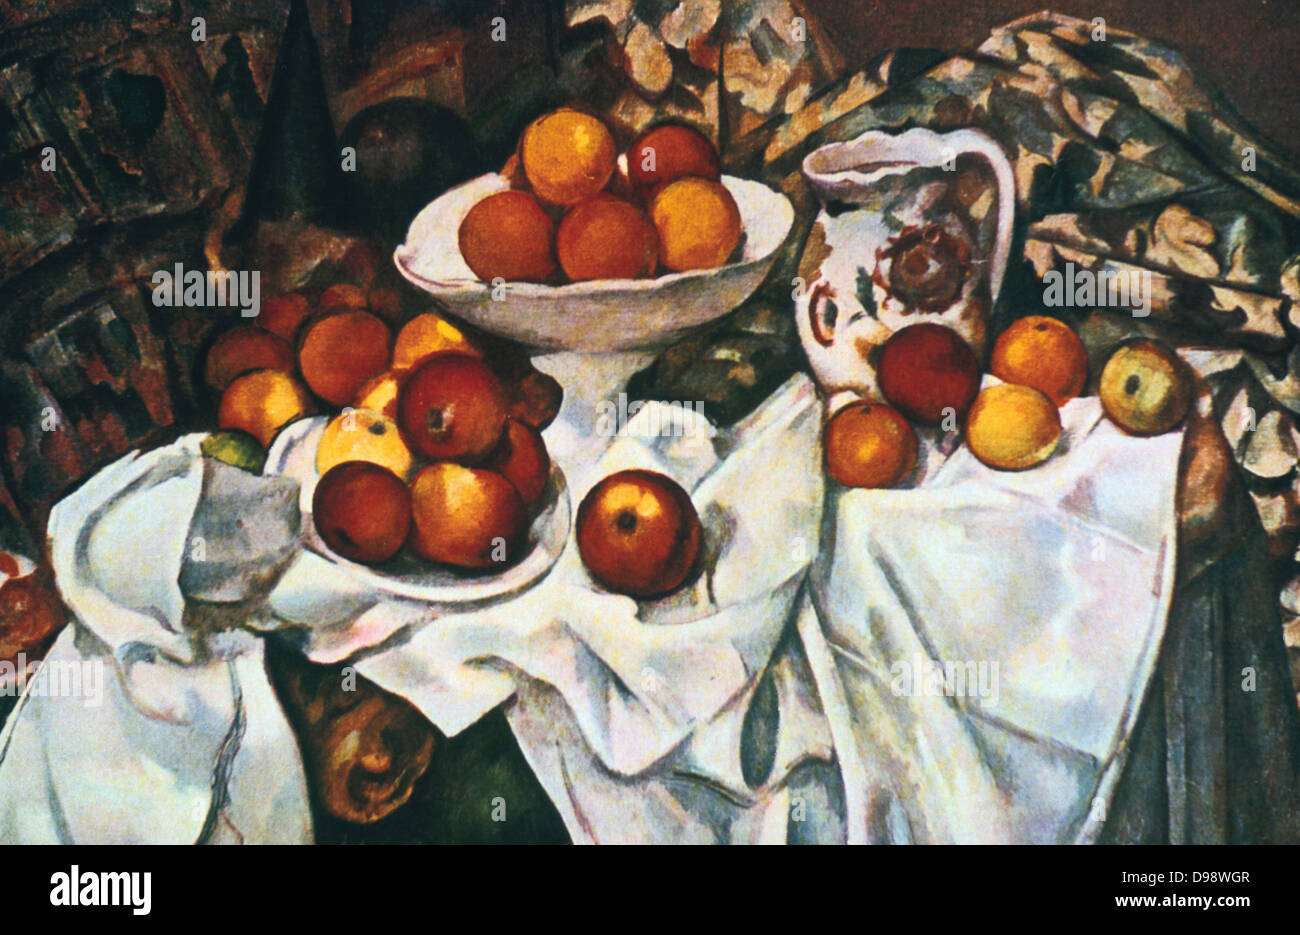 Äpfel und Orangen, c1899. Öl auf Leinwand. Französische Post-Impressionisten Maler Paul Cézanne (1839-1906). Stillleben Früchte Stockfoto